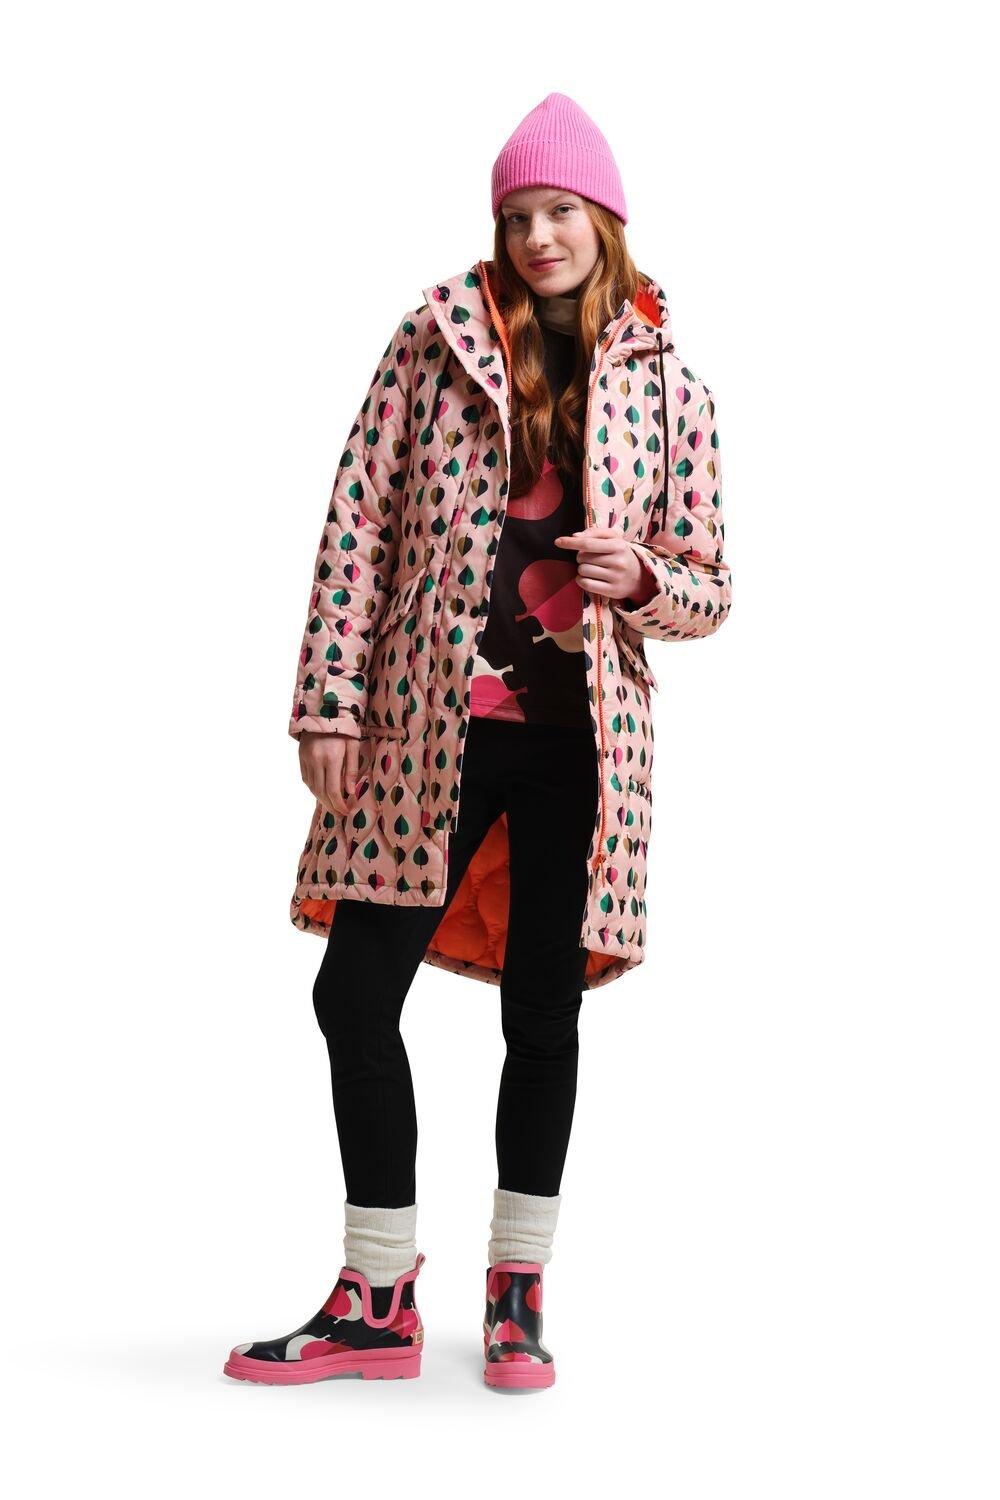 Водонепроницаемая куртка Isotex средней длины Orla Kiely Quilt Regatta, розовый женское кожаное пальто средней длины костюмный воротник плащ из овчины осенне зимнее пальто свободный силуэт натуральное пальто